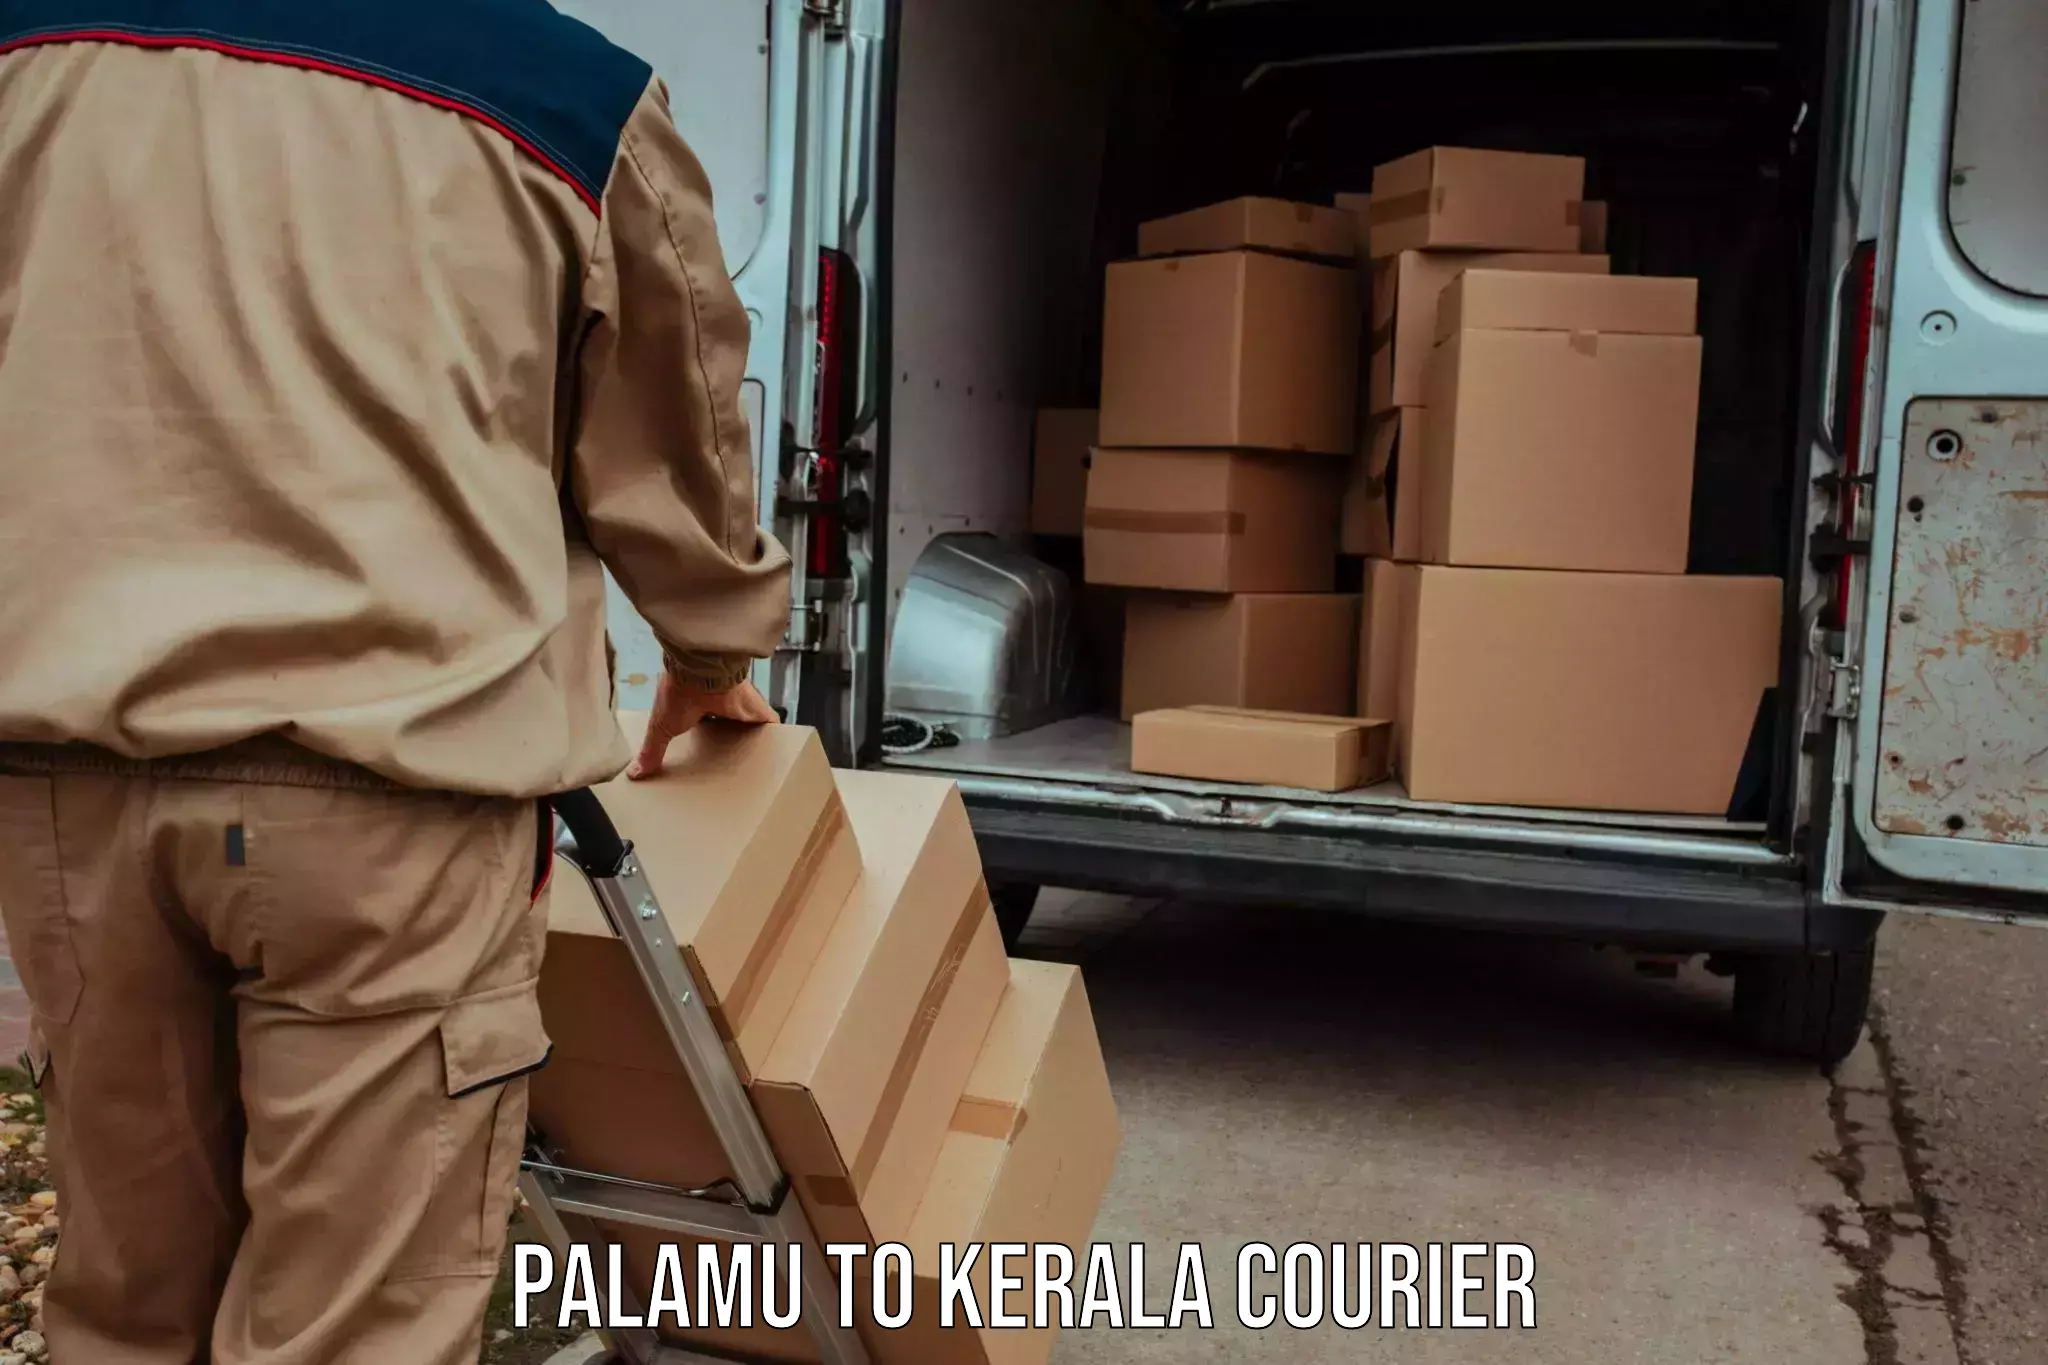 Automated parcel services Palamu to Kuchi